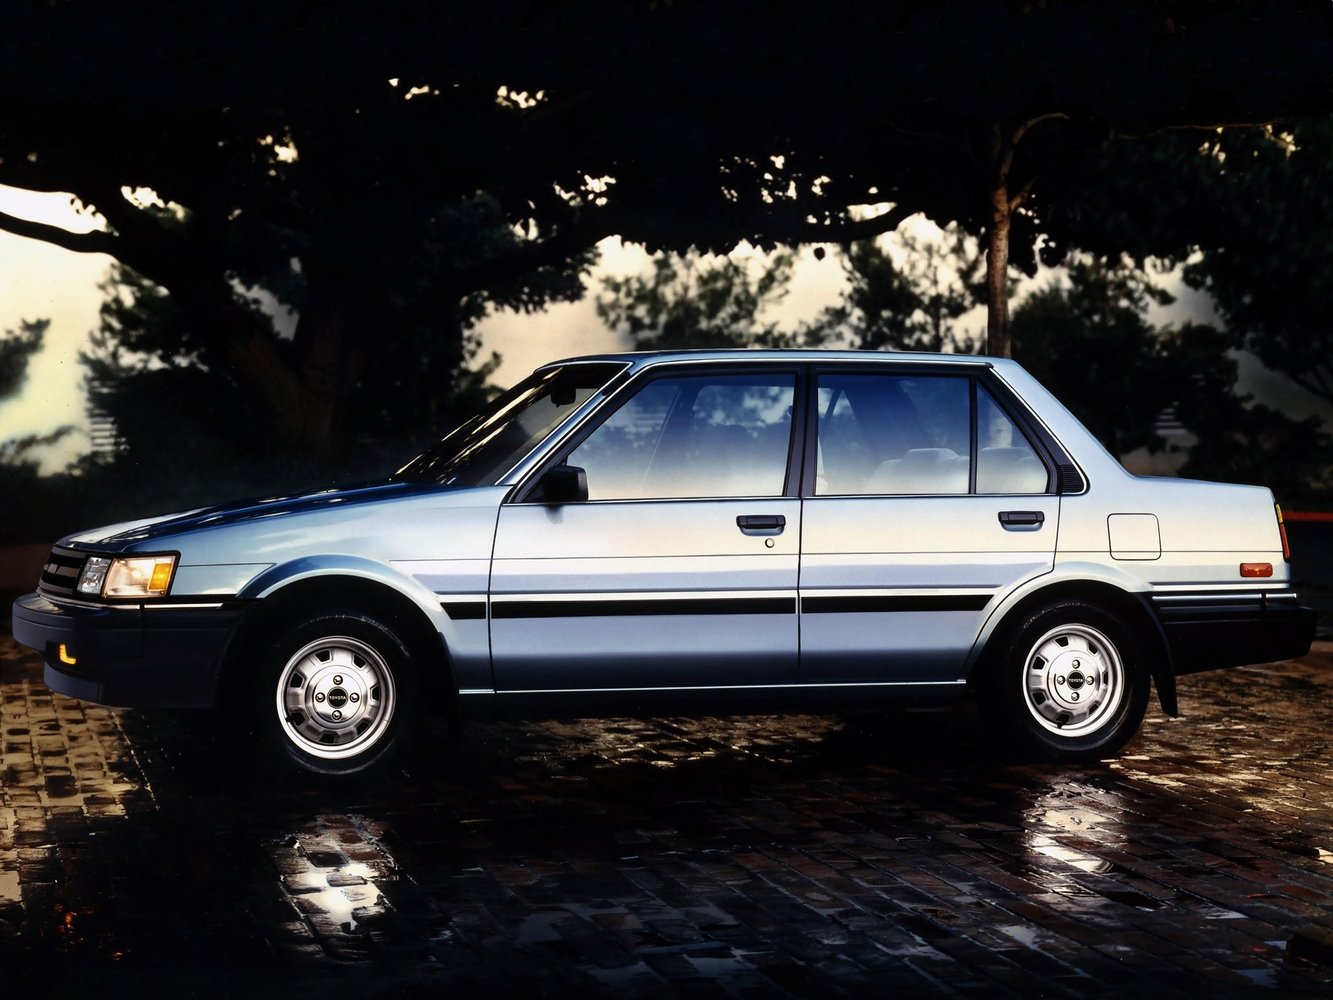 седан Toyota Corolla 1983 - 1987г выпуска модификация 1.6 AT (73 л.с.)